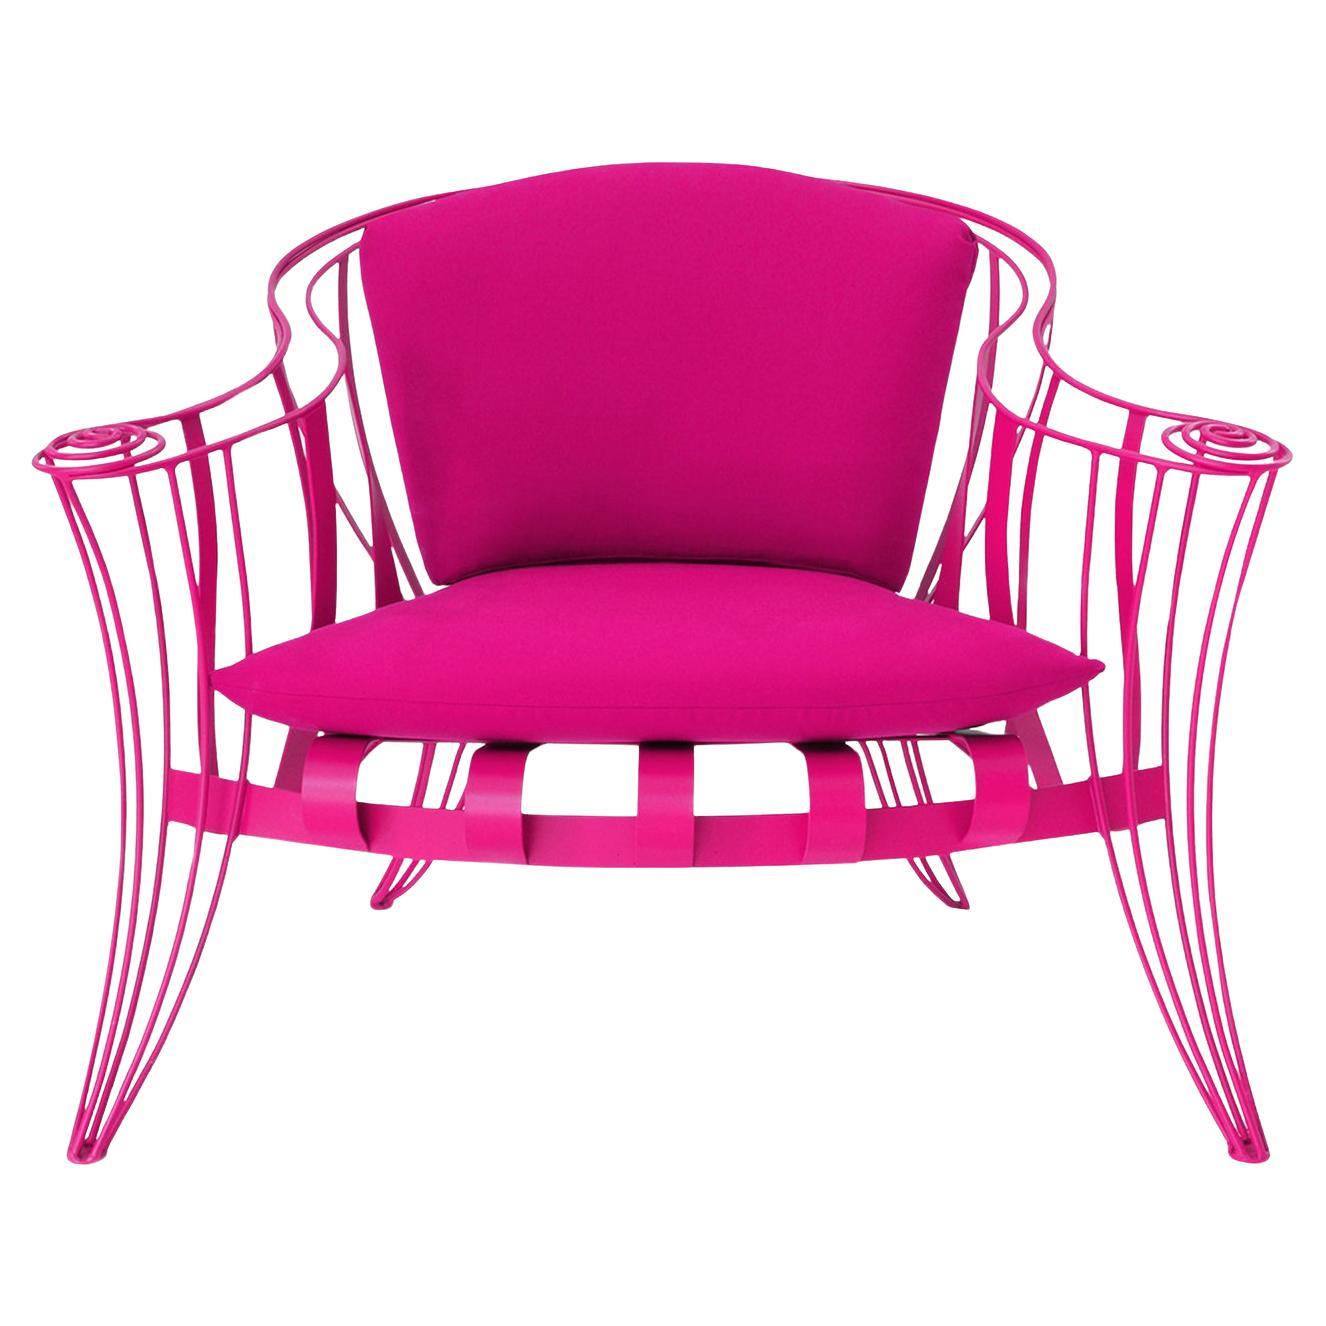 Opus Garden Armchair - Pink Colour - Design Carlo Rampazzi